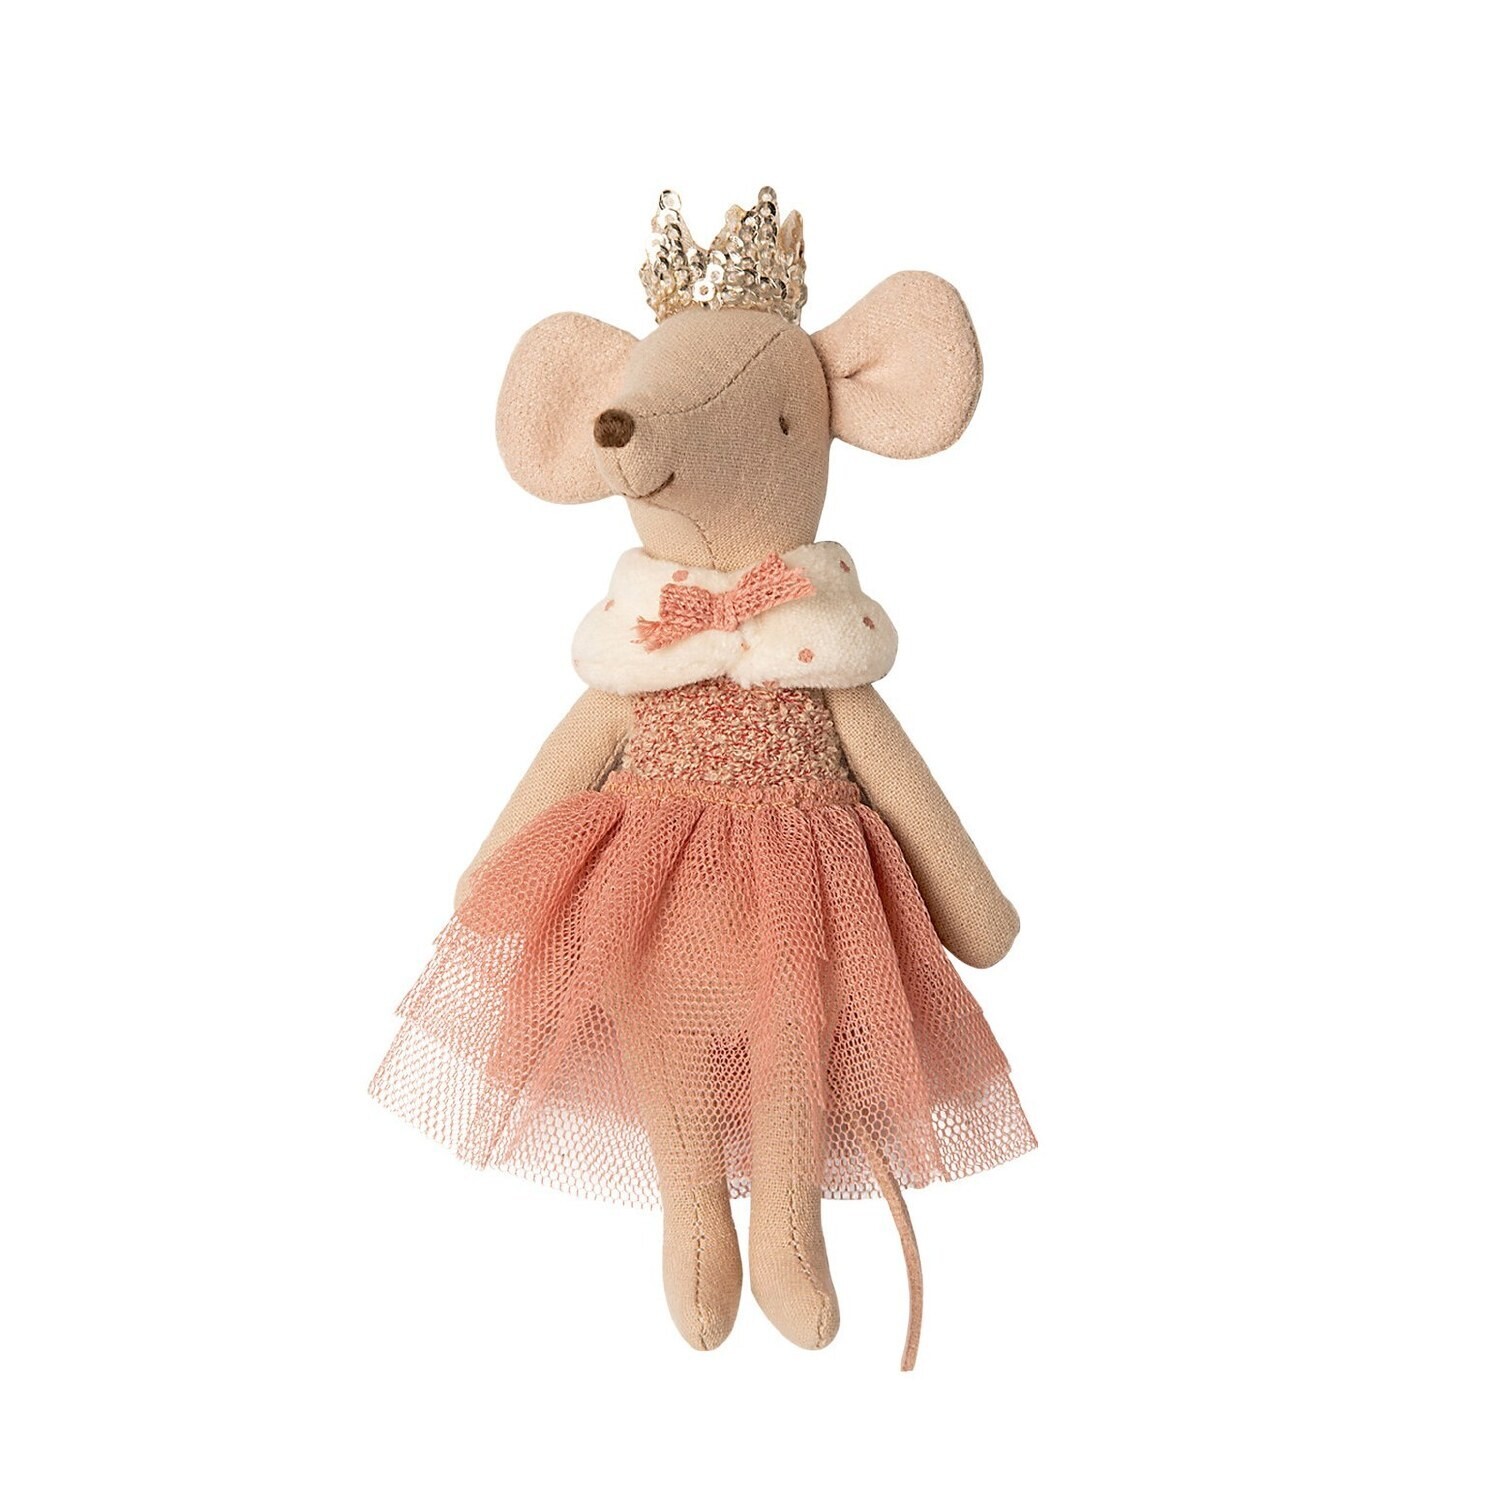 Princess Mouse, Big Sister